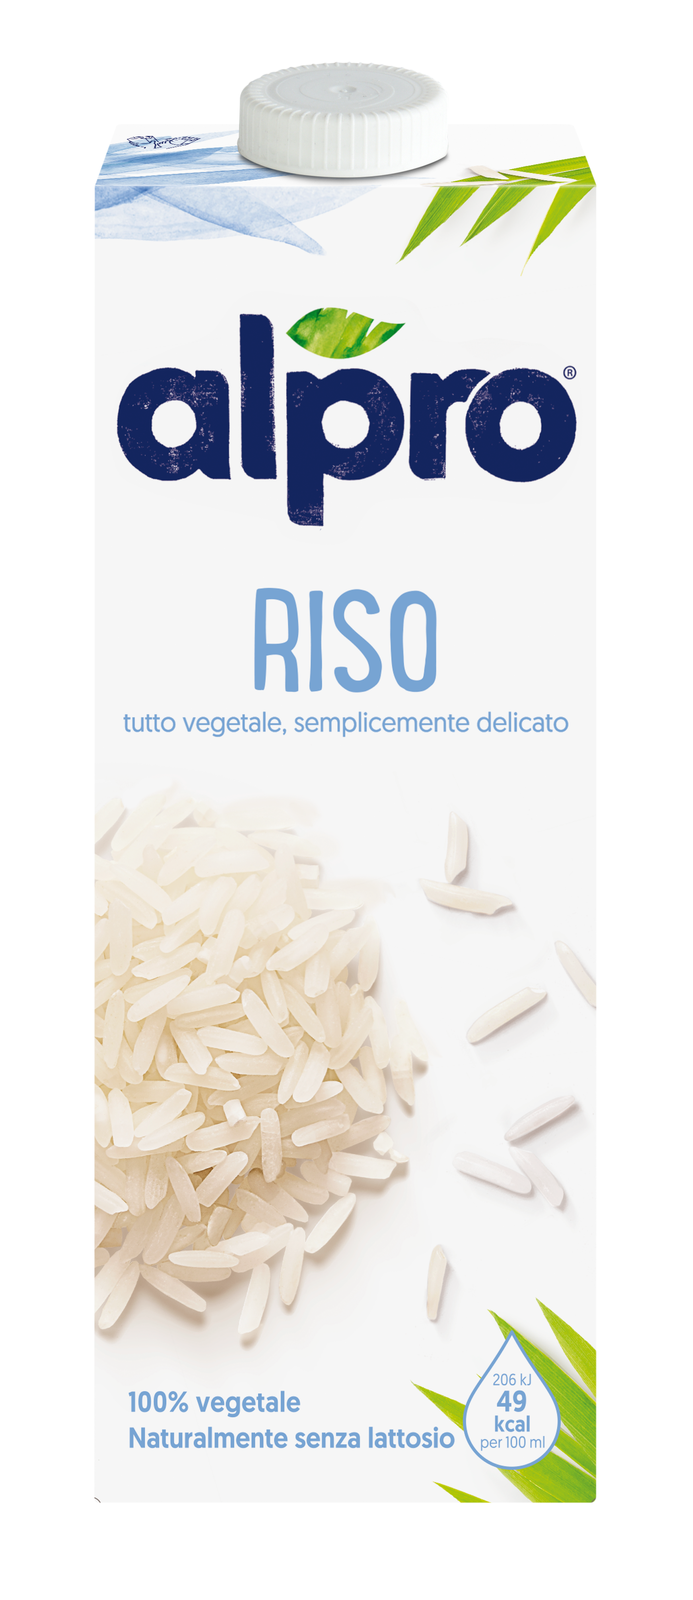 Latte di RISO-COCCO 1l